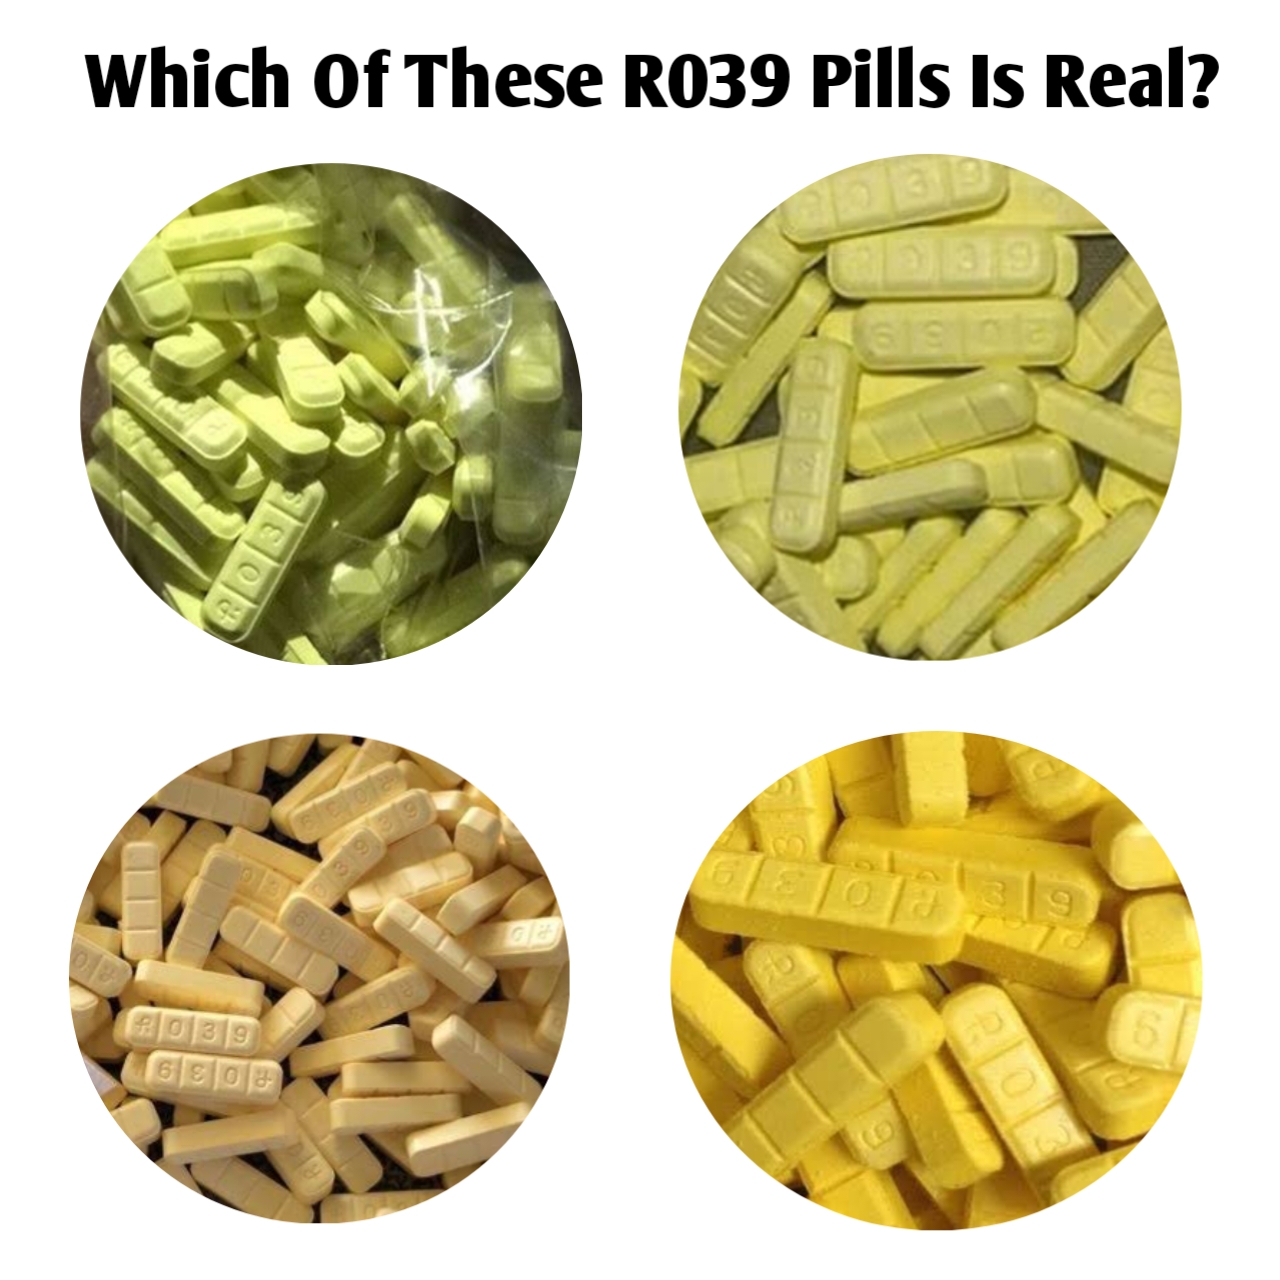 Fake R039 Pill